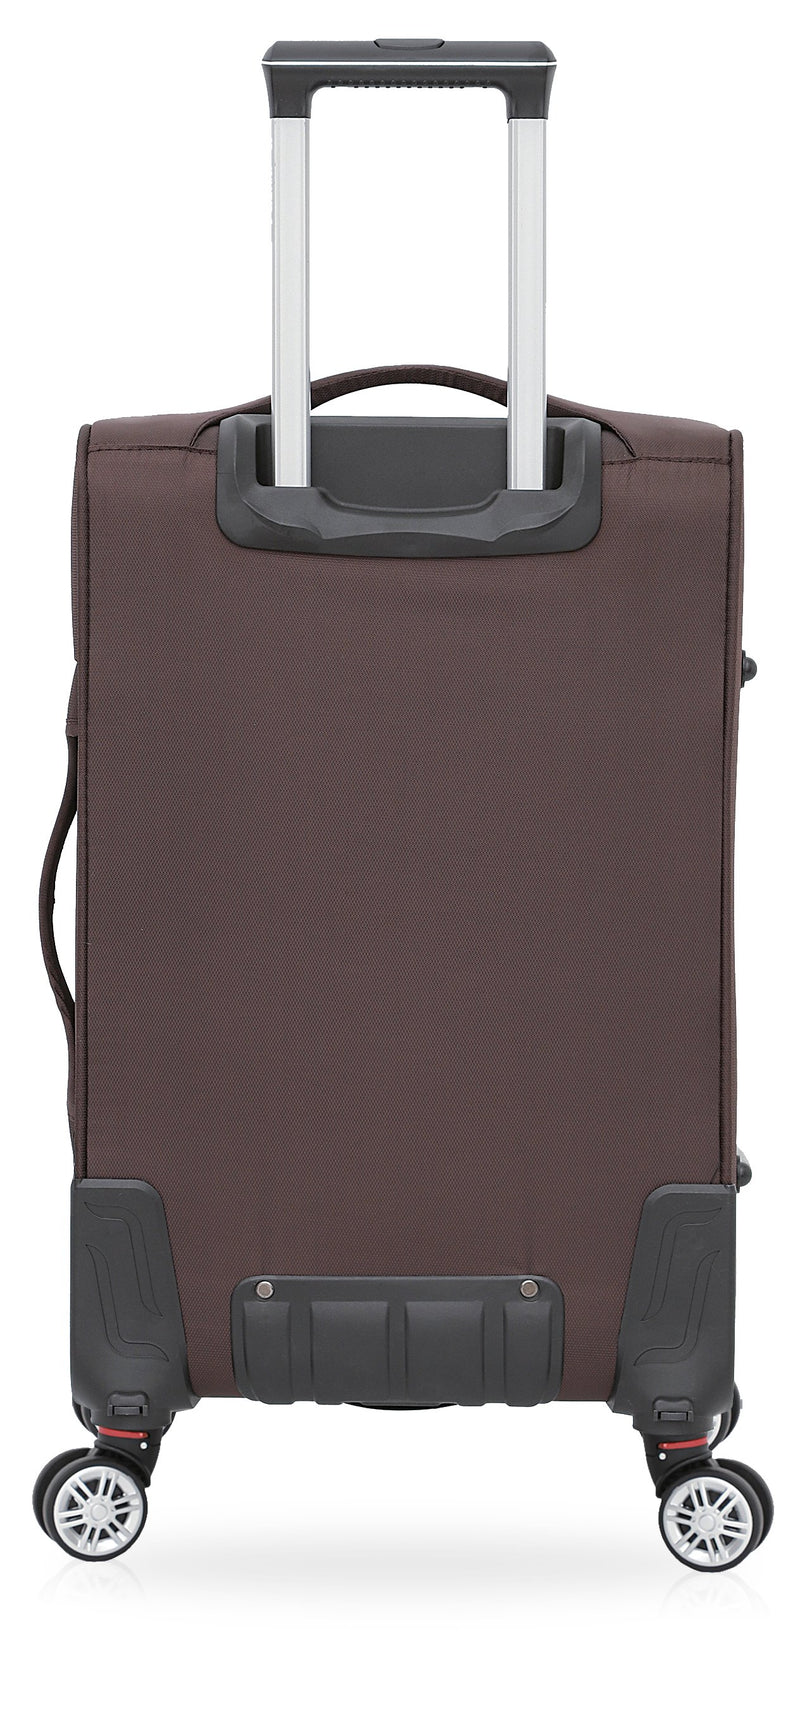 TOSCANO 29-inch Ricerca Large Luggage Suitcase